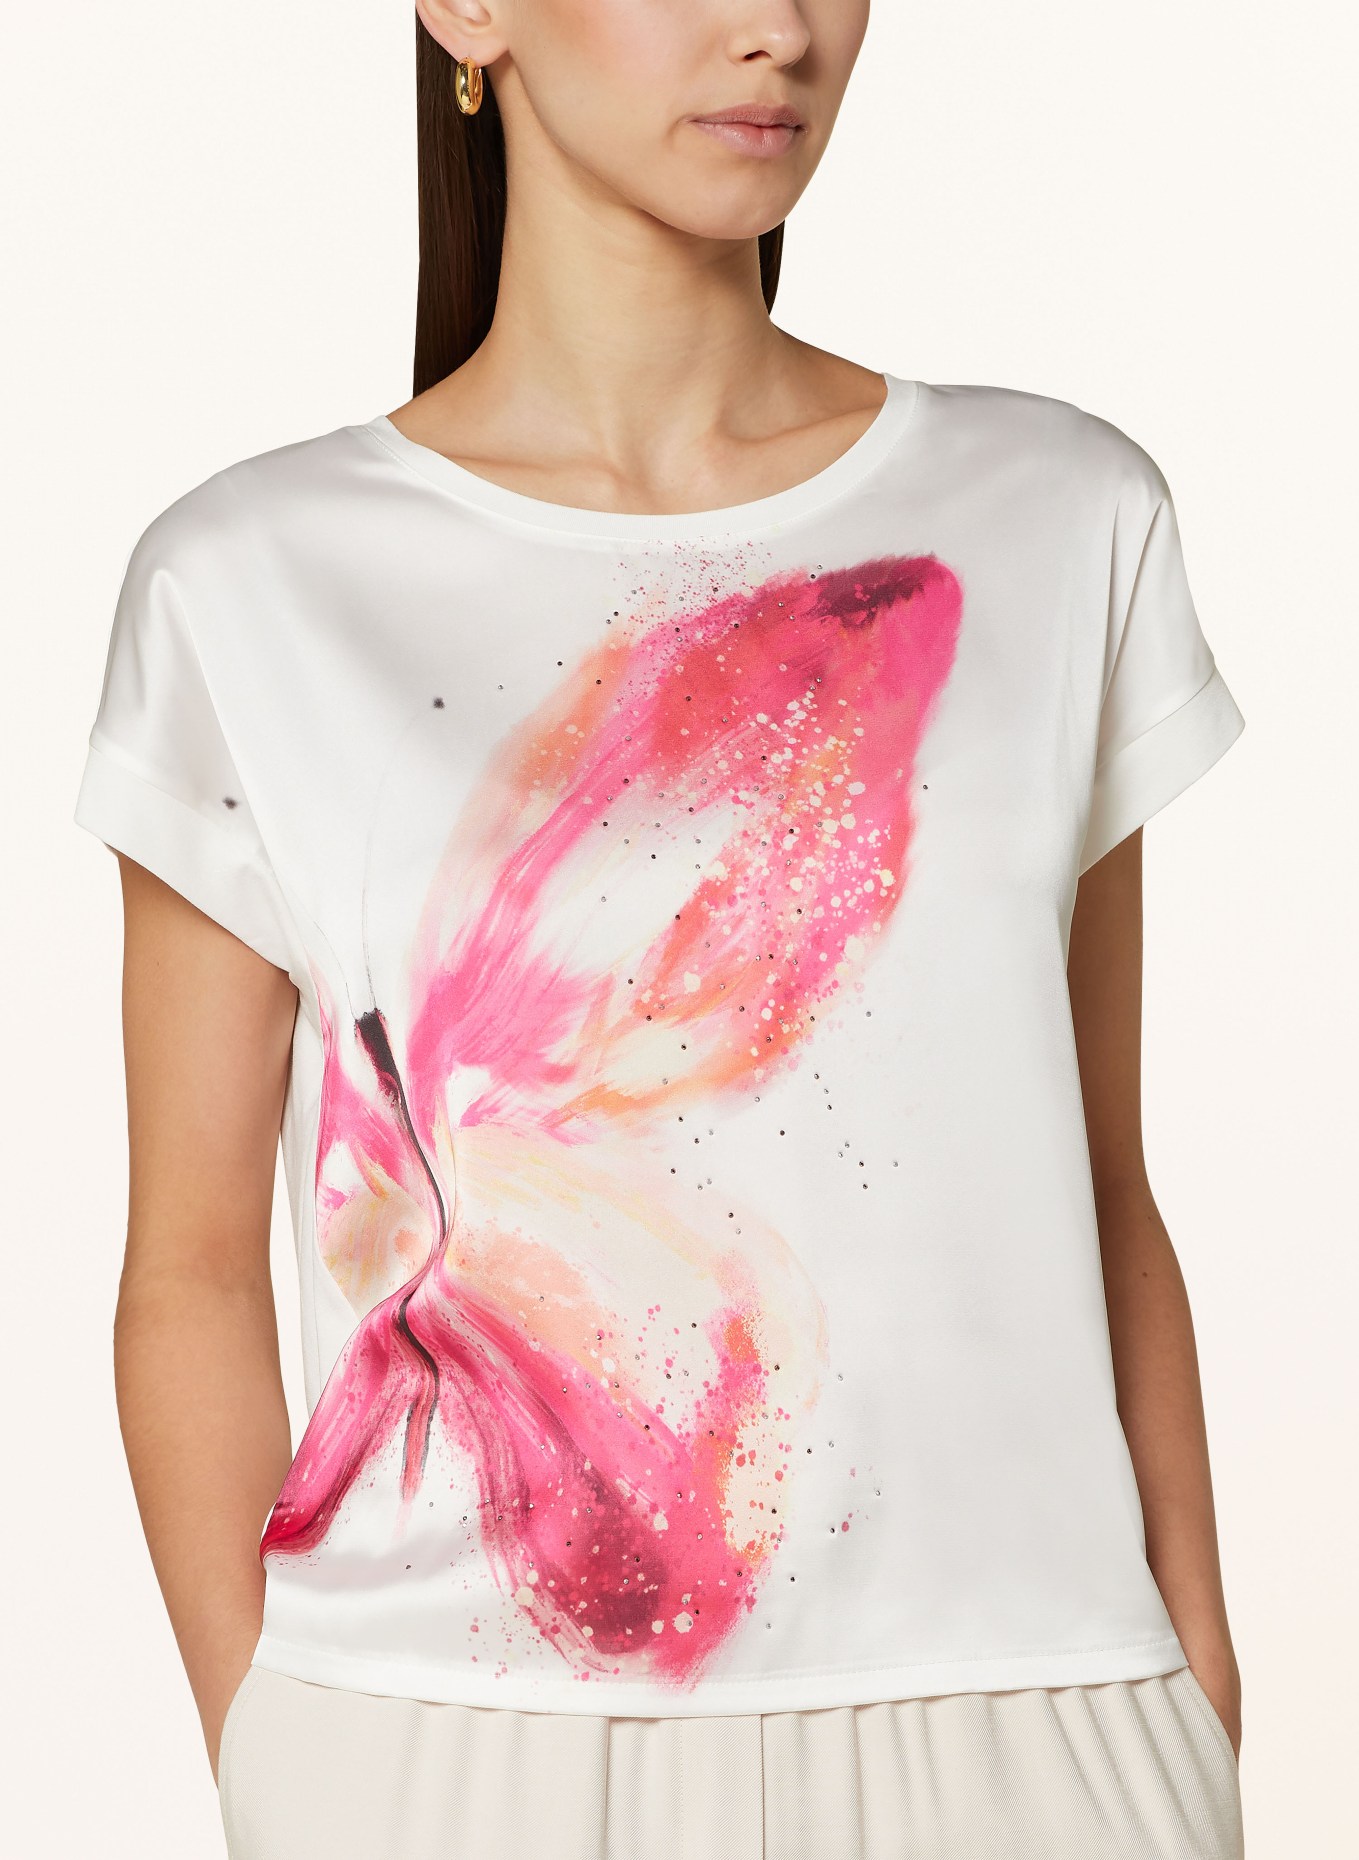 monari T-shirt in mixed materials, Color: ECRU (Image 4)